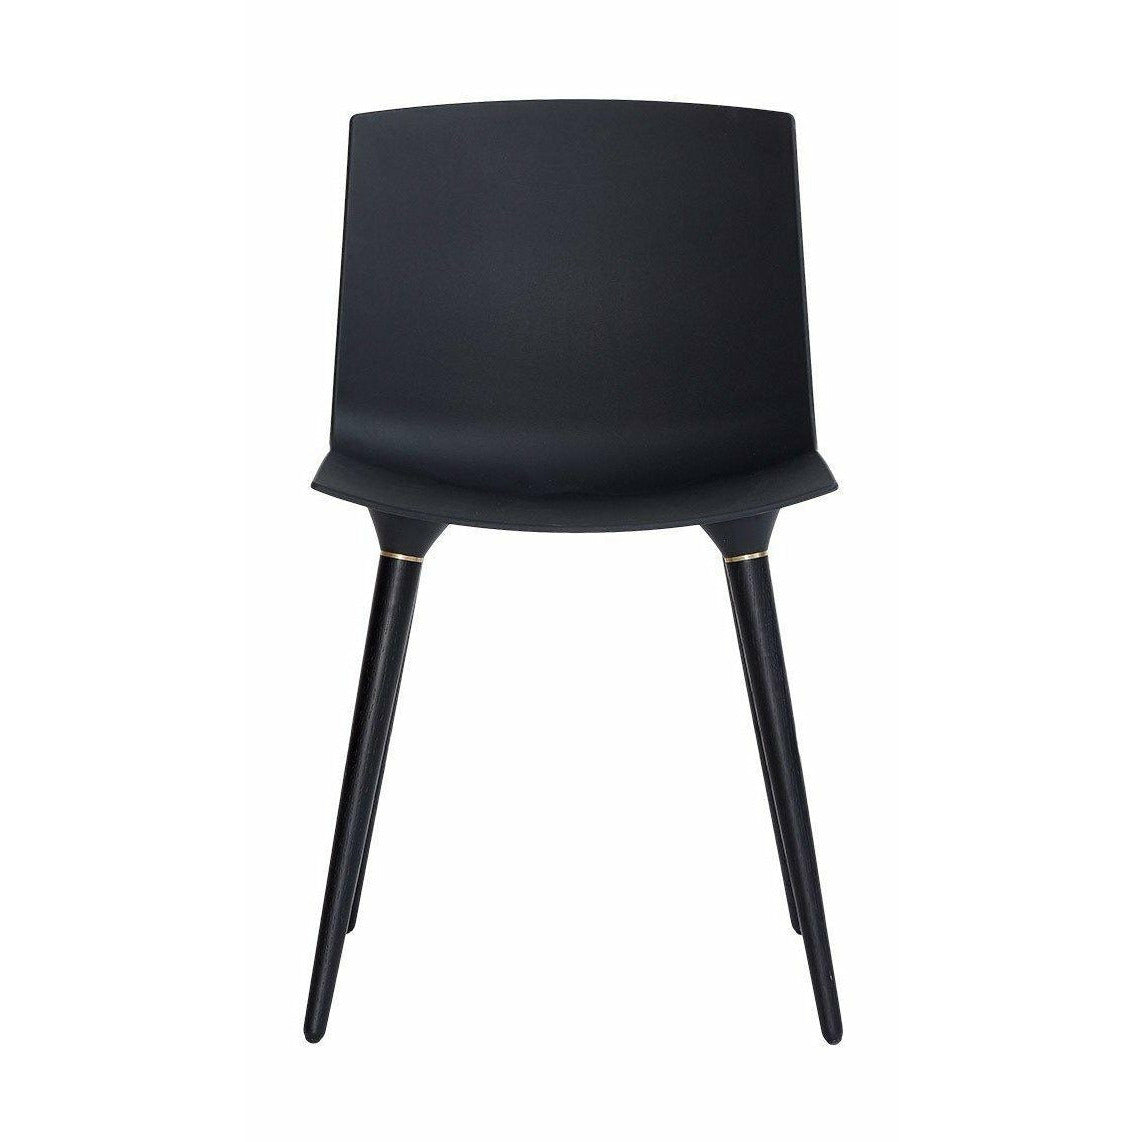 Muebles Andersen silla tac roble lacado negro, asiento de plástico negro